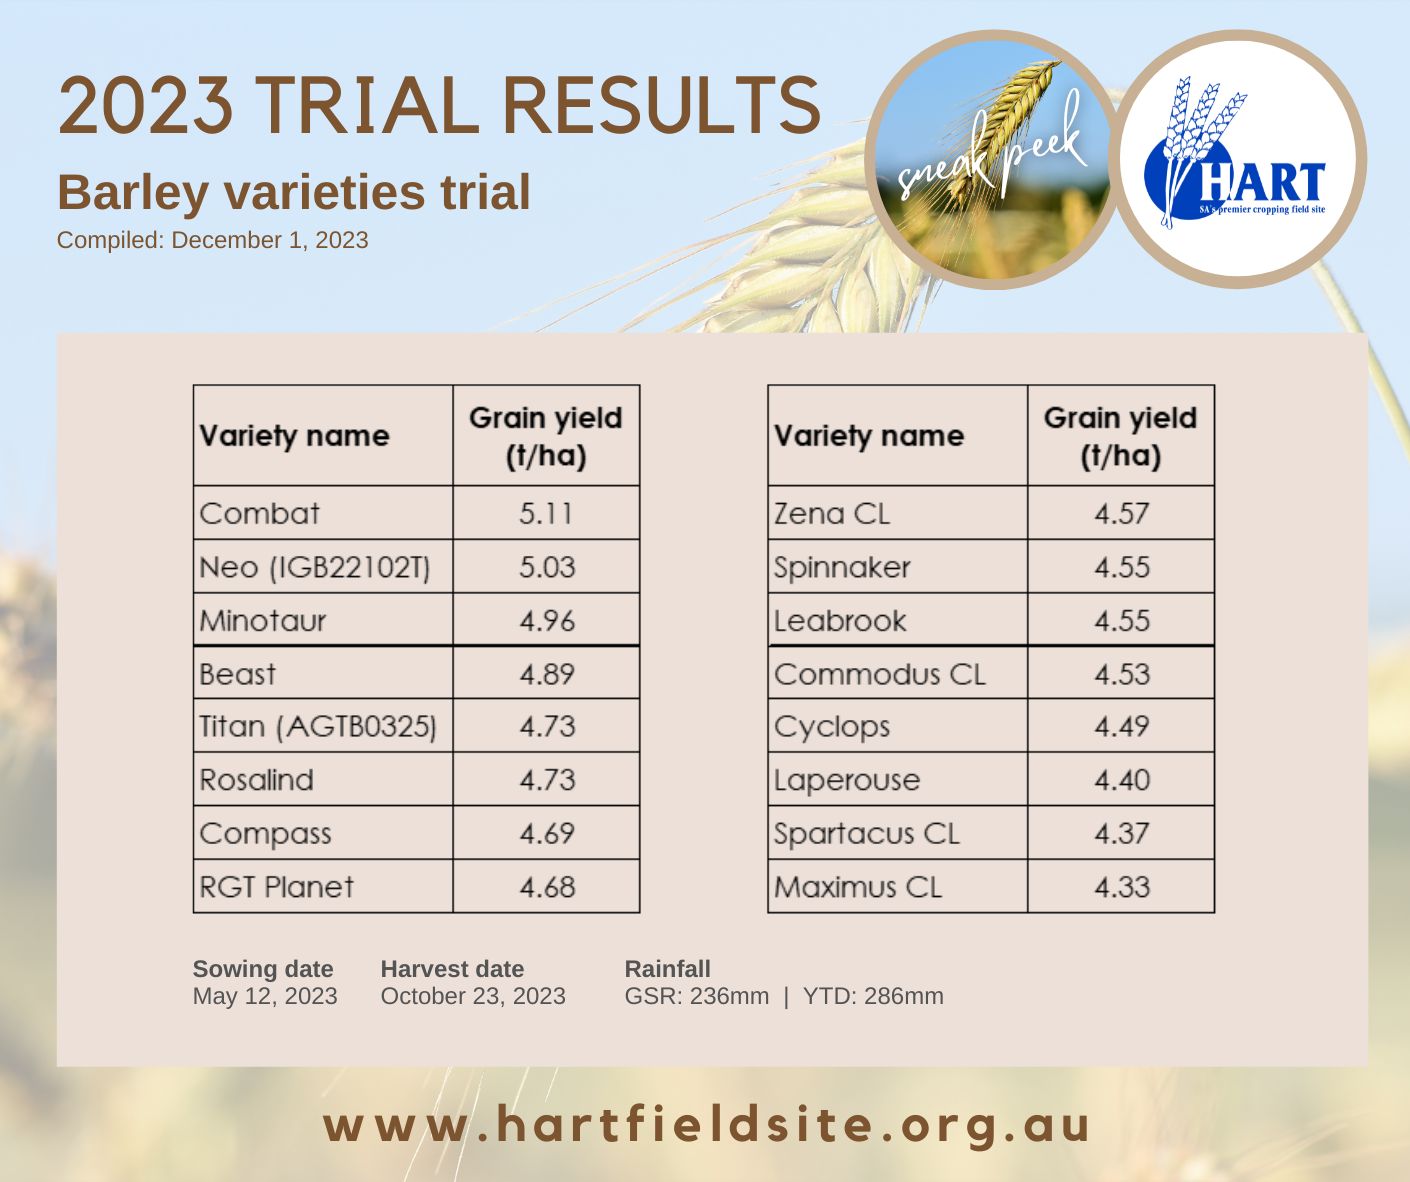 Hart Trials Results 2023 - Barley varieties 'sneak peek'